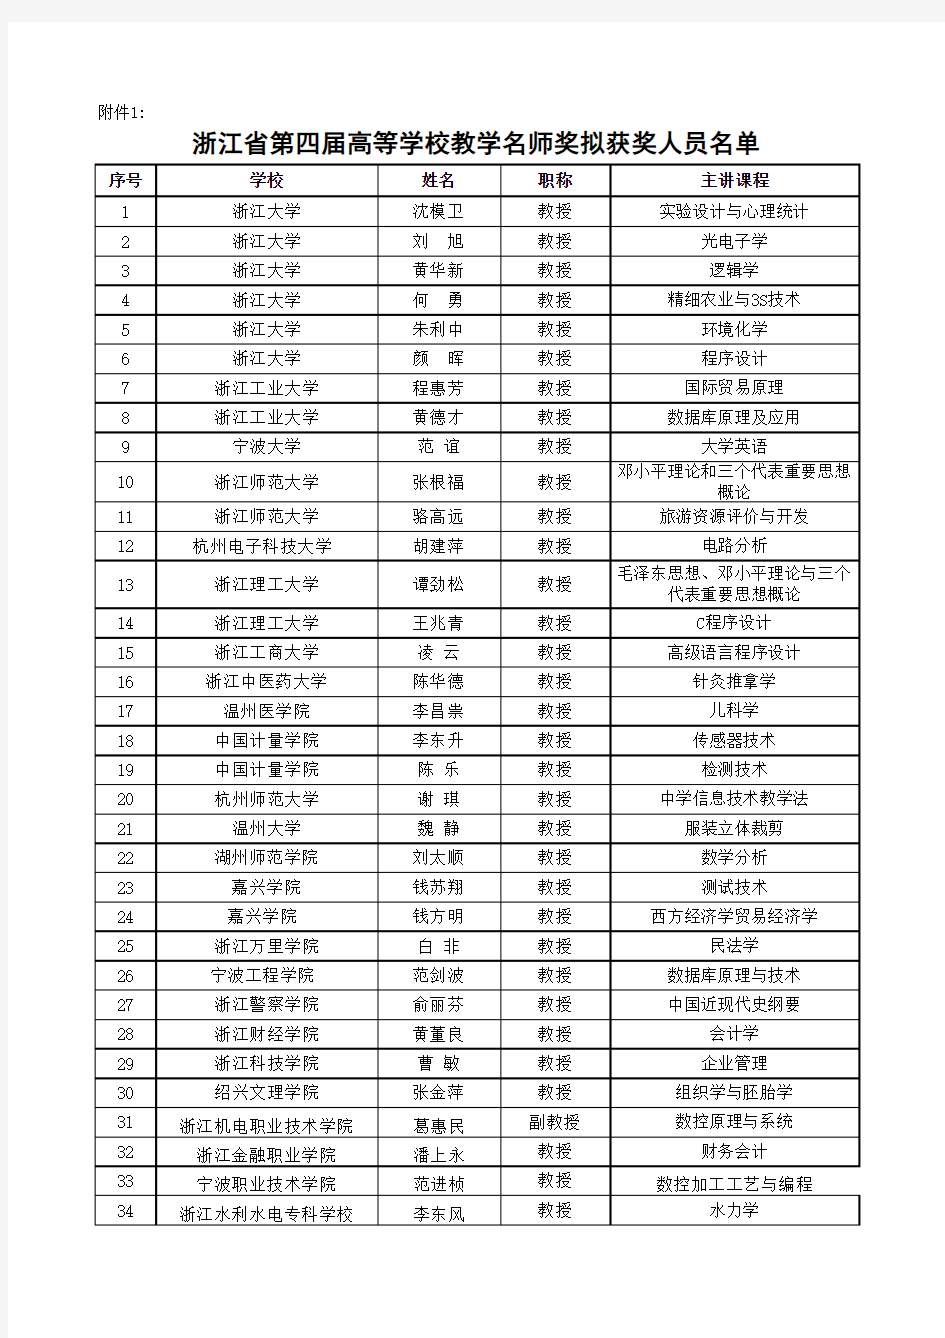 1、浙江省第四届高等学校教学名师奖拟获奖人员名单